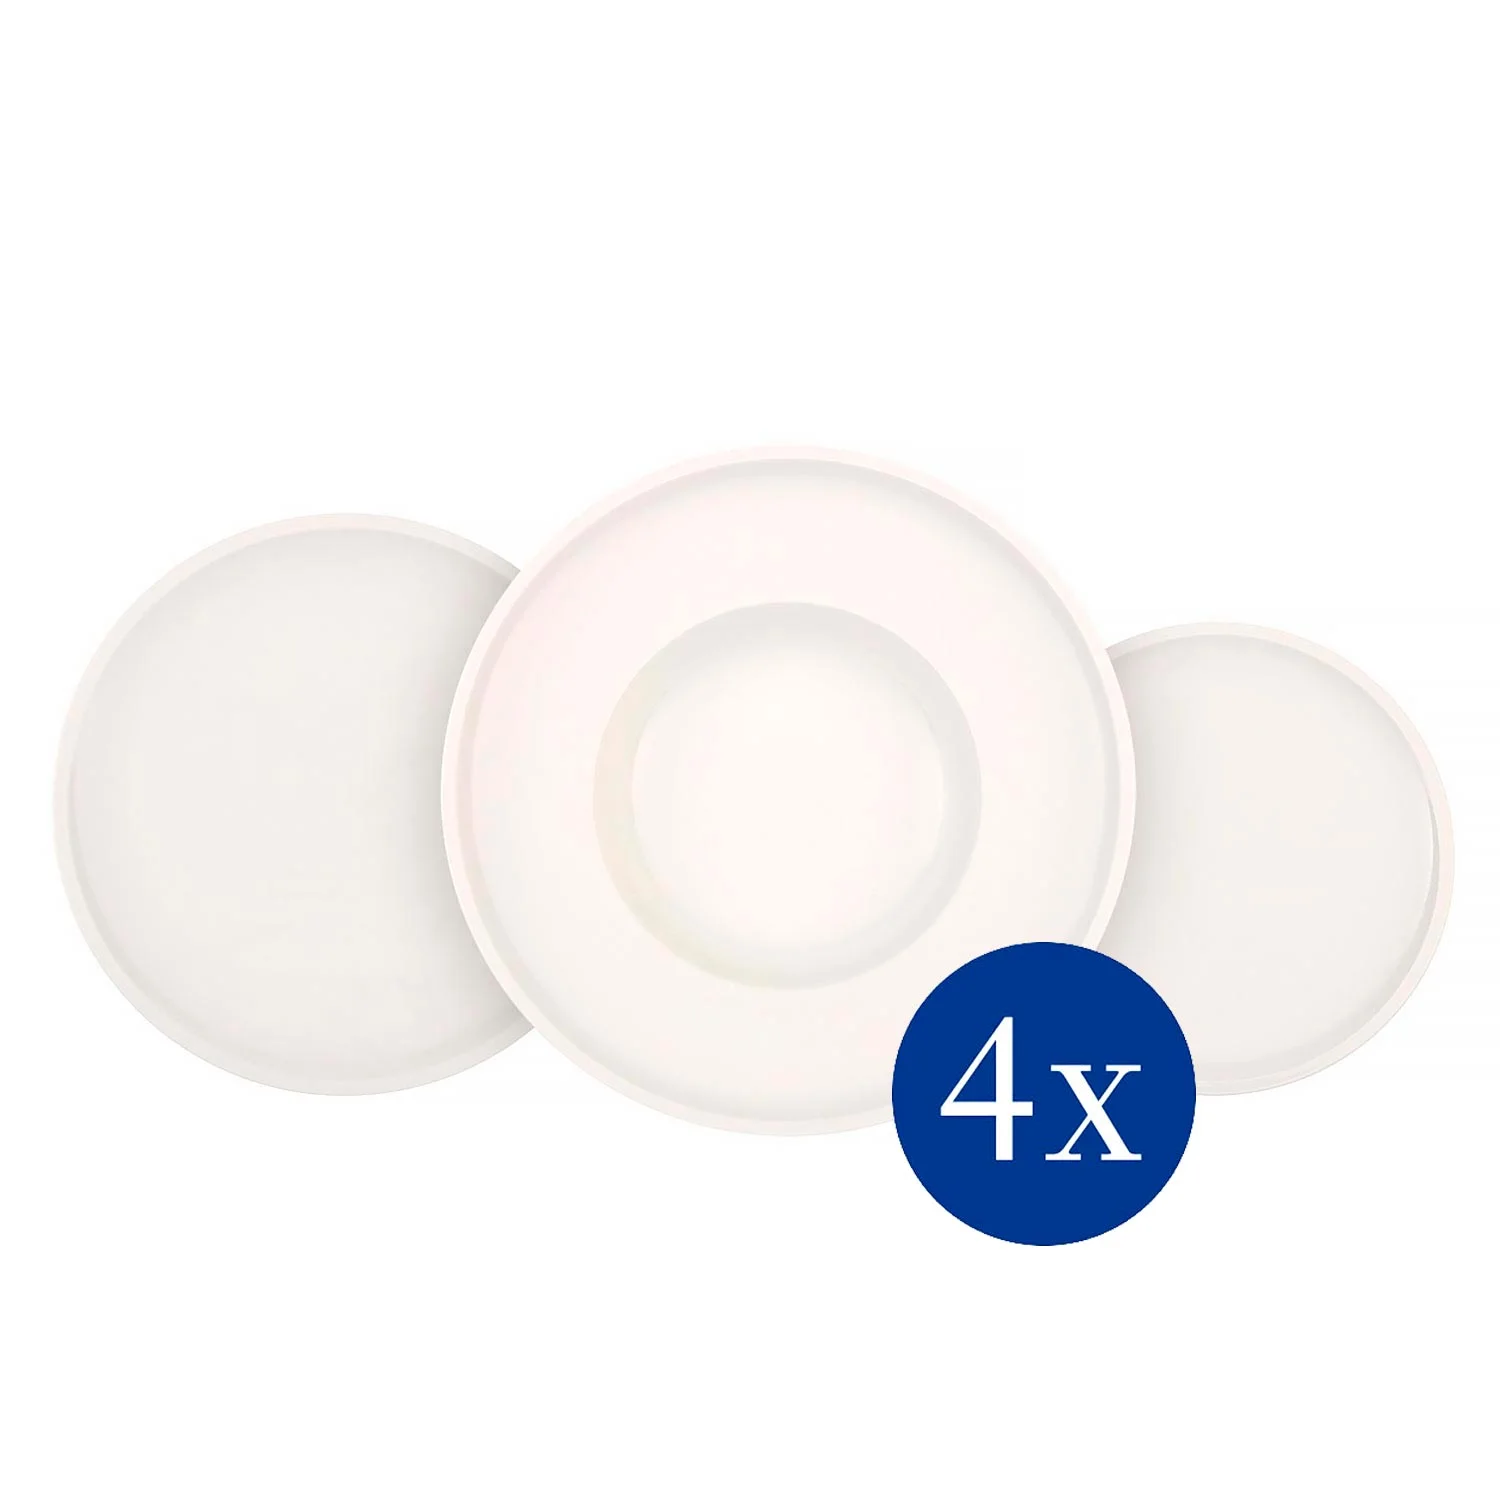 Artesano Original Набор тарелок на 4 персоны, 12 предметов